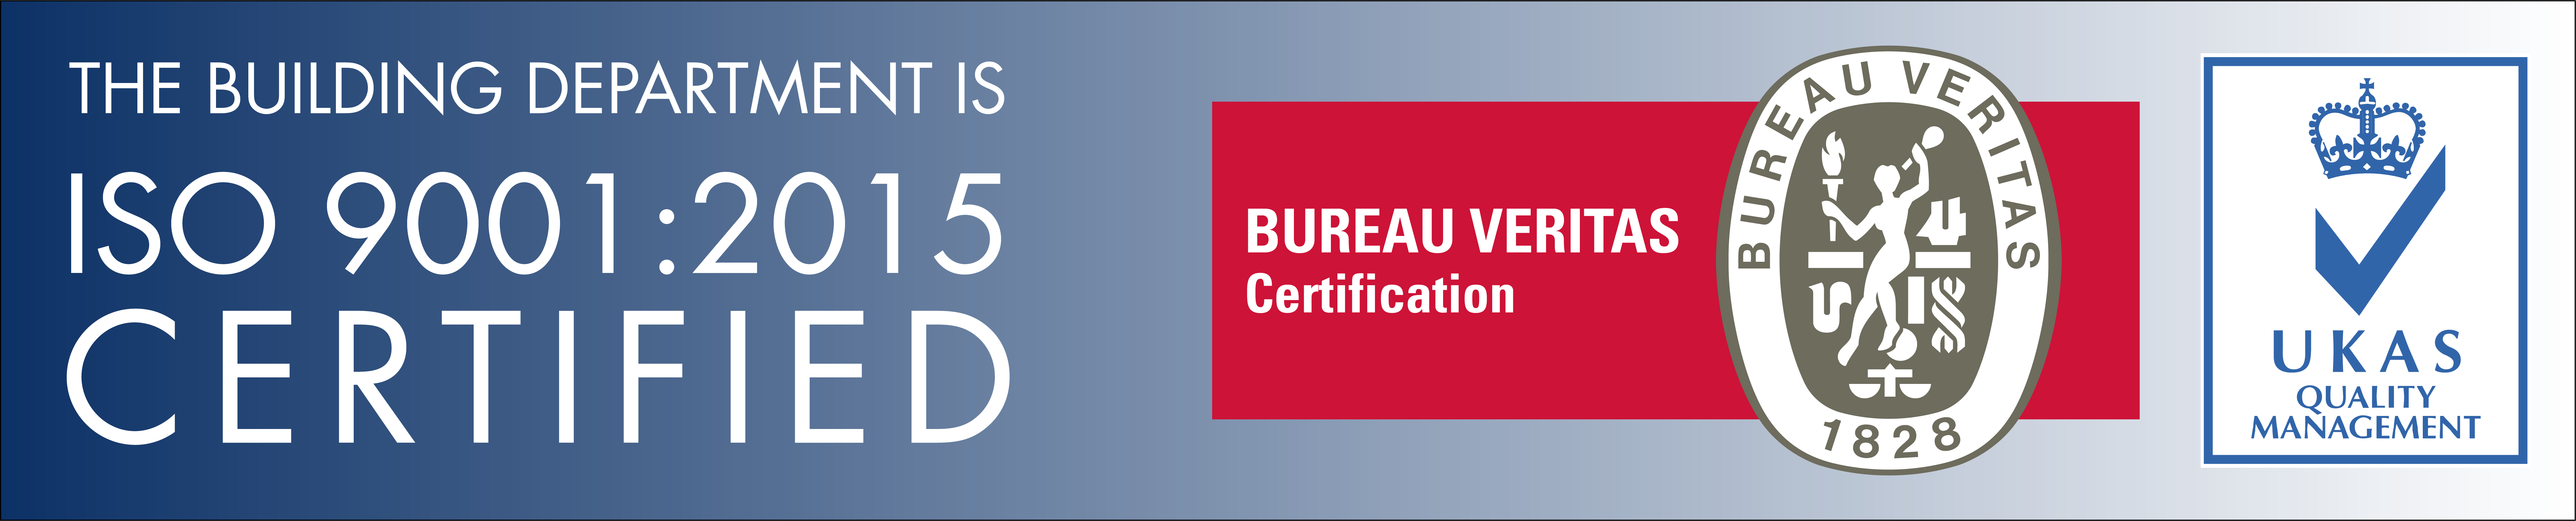 ISO Certification logo v3